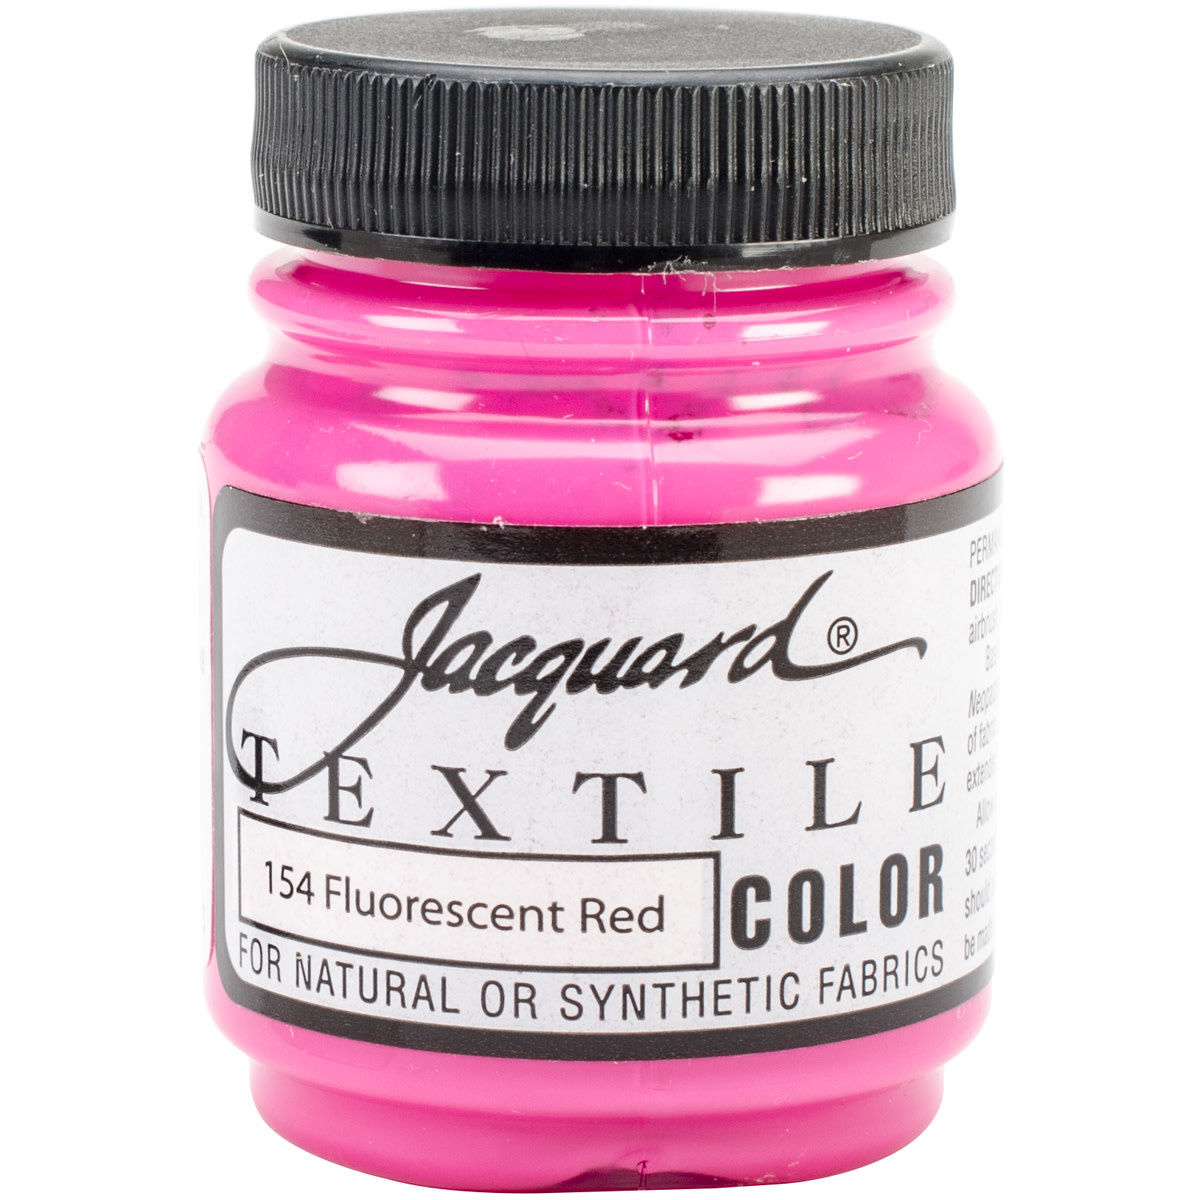 Jacquard Textile Color Fabric Paint 8oz Fluorescent Violet